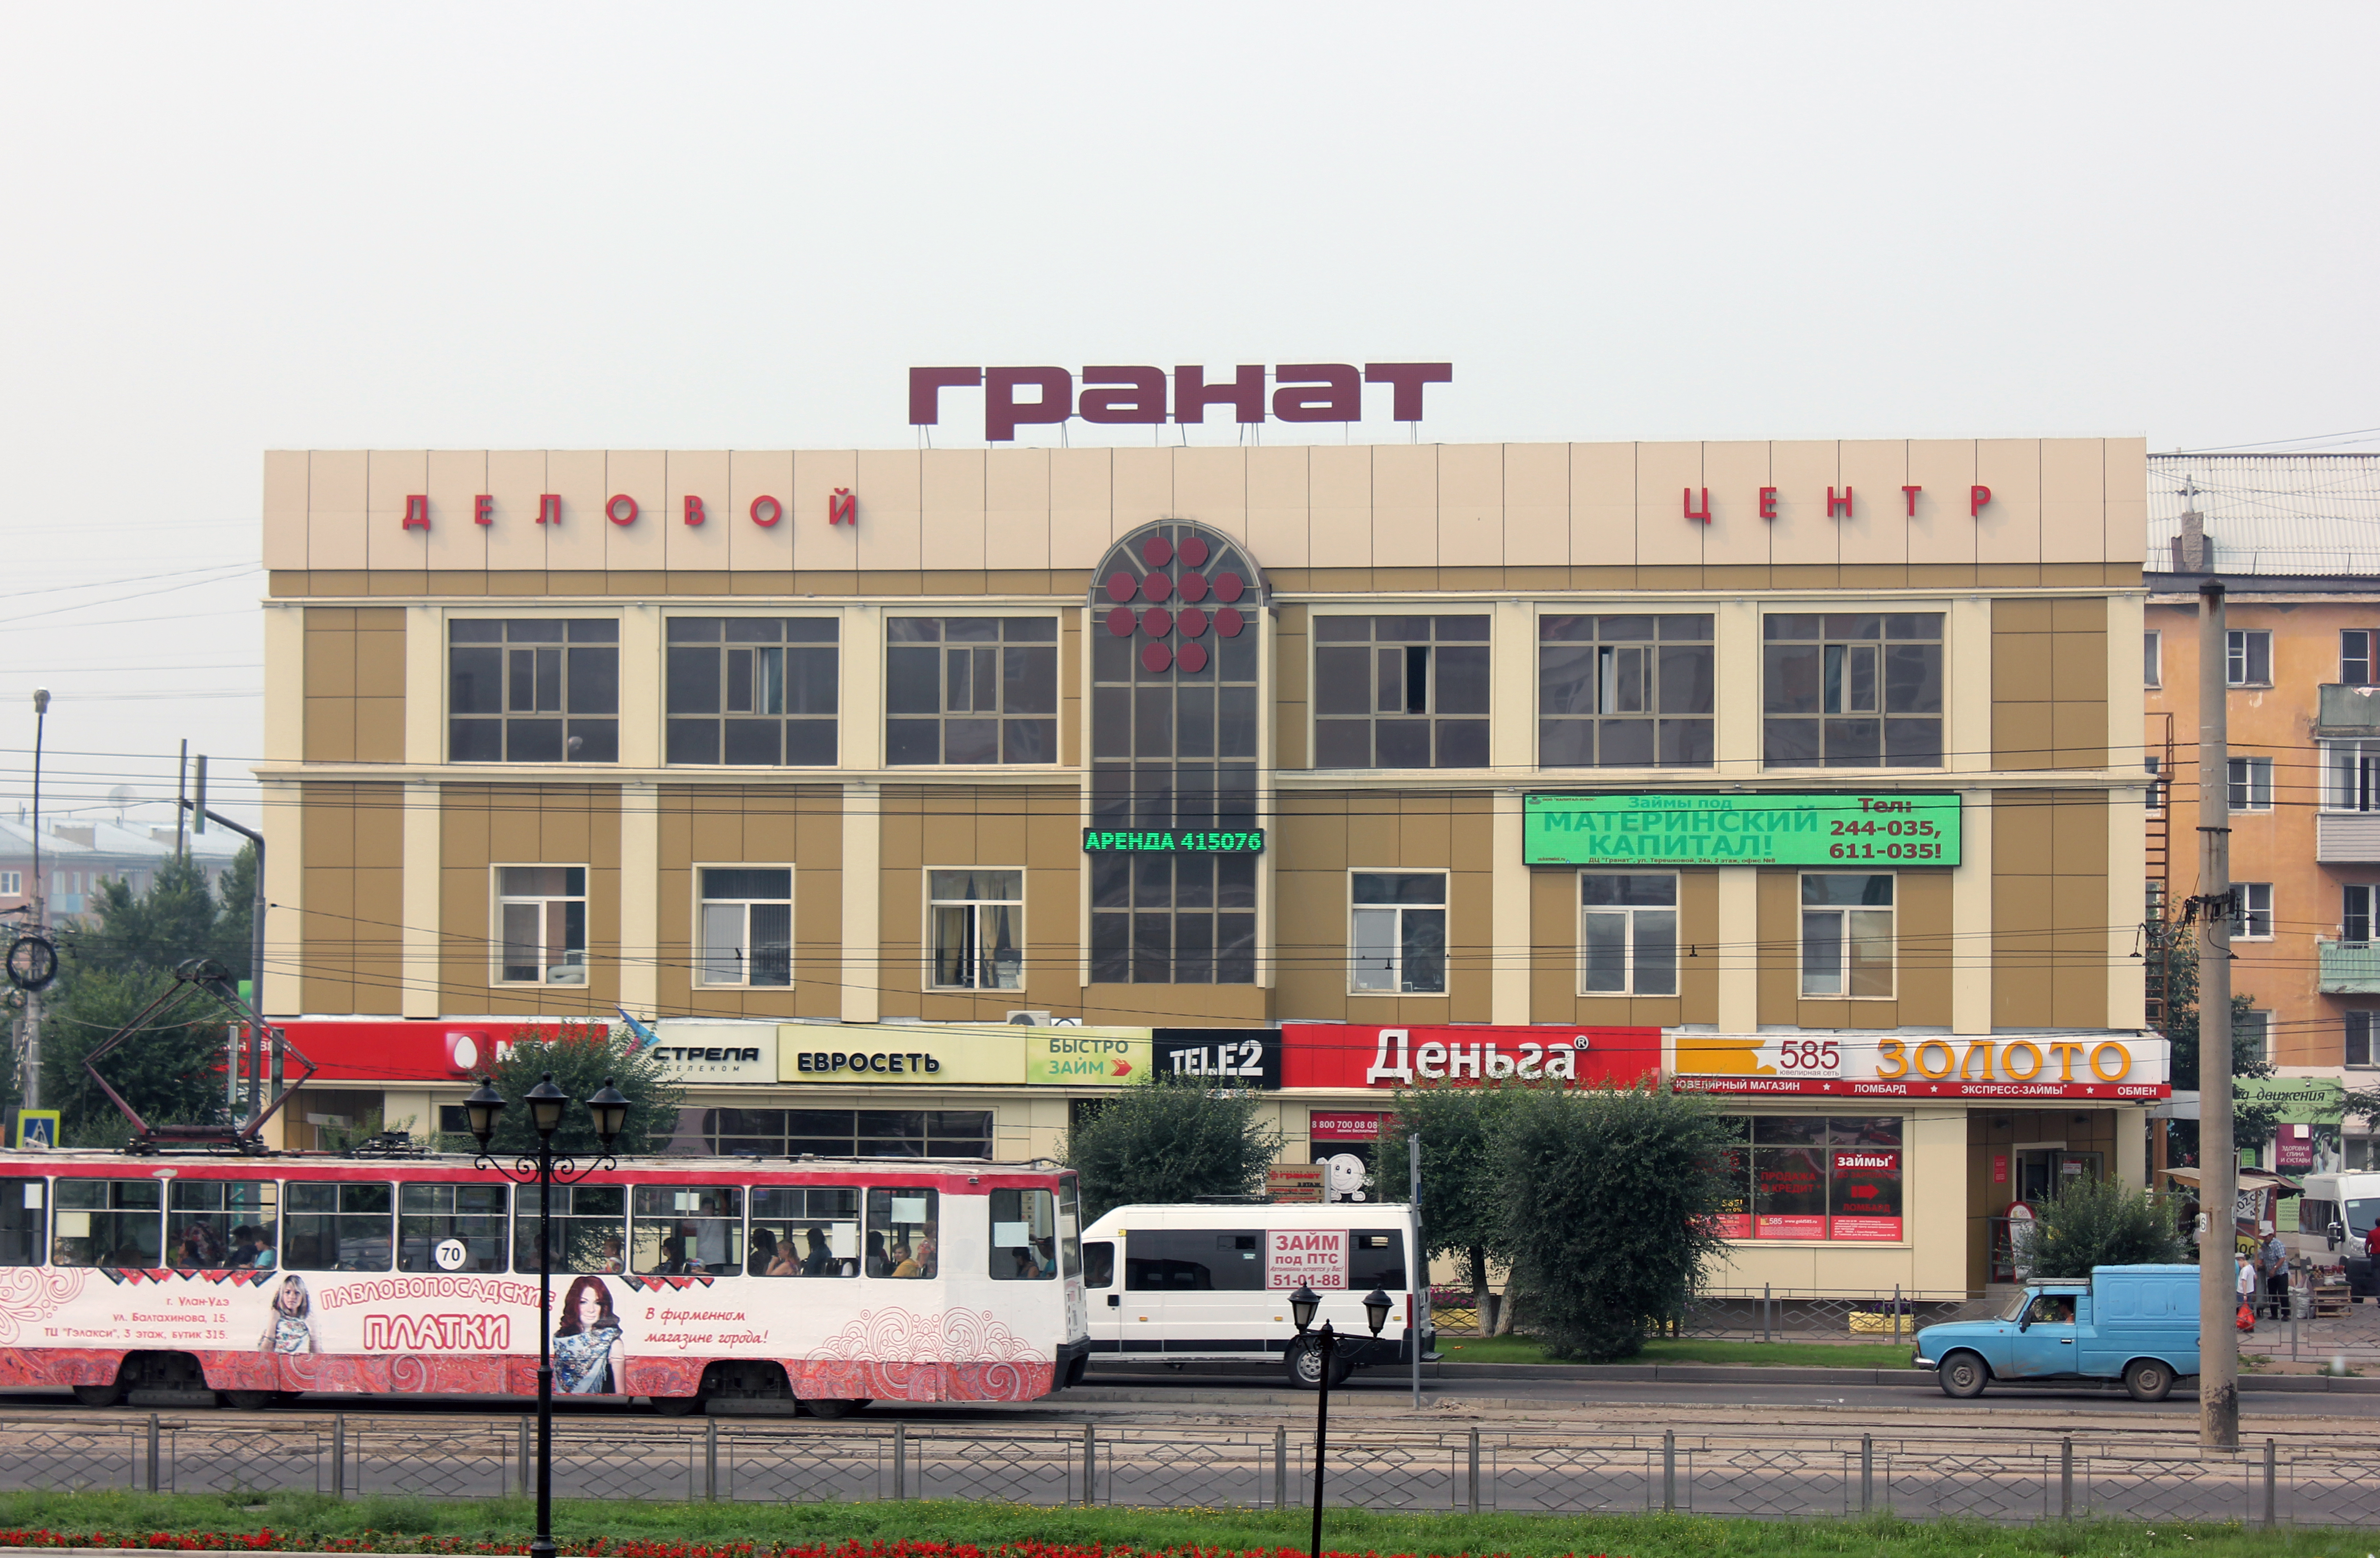 Улан-Удэ центр гранат. ТЦ гранат Улан-Удэ. ТЦ гранат Екатеринбург. Торговый центр Саяны Улан-Удэ.